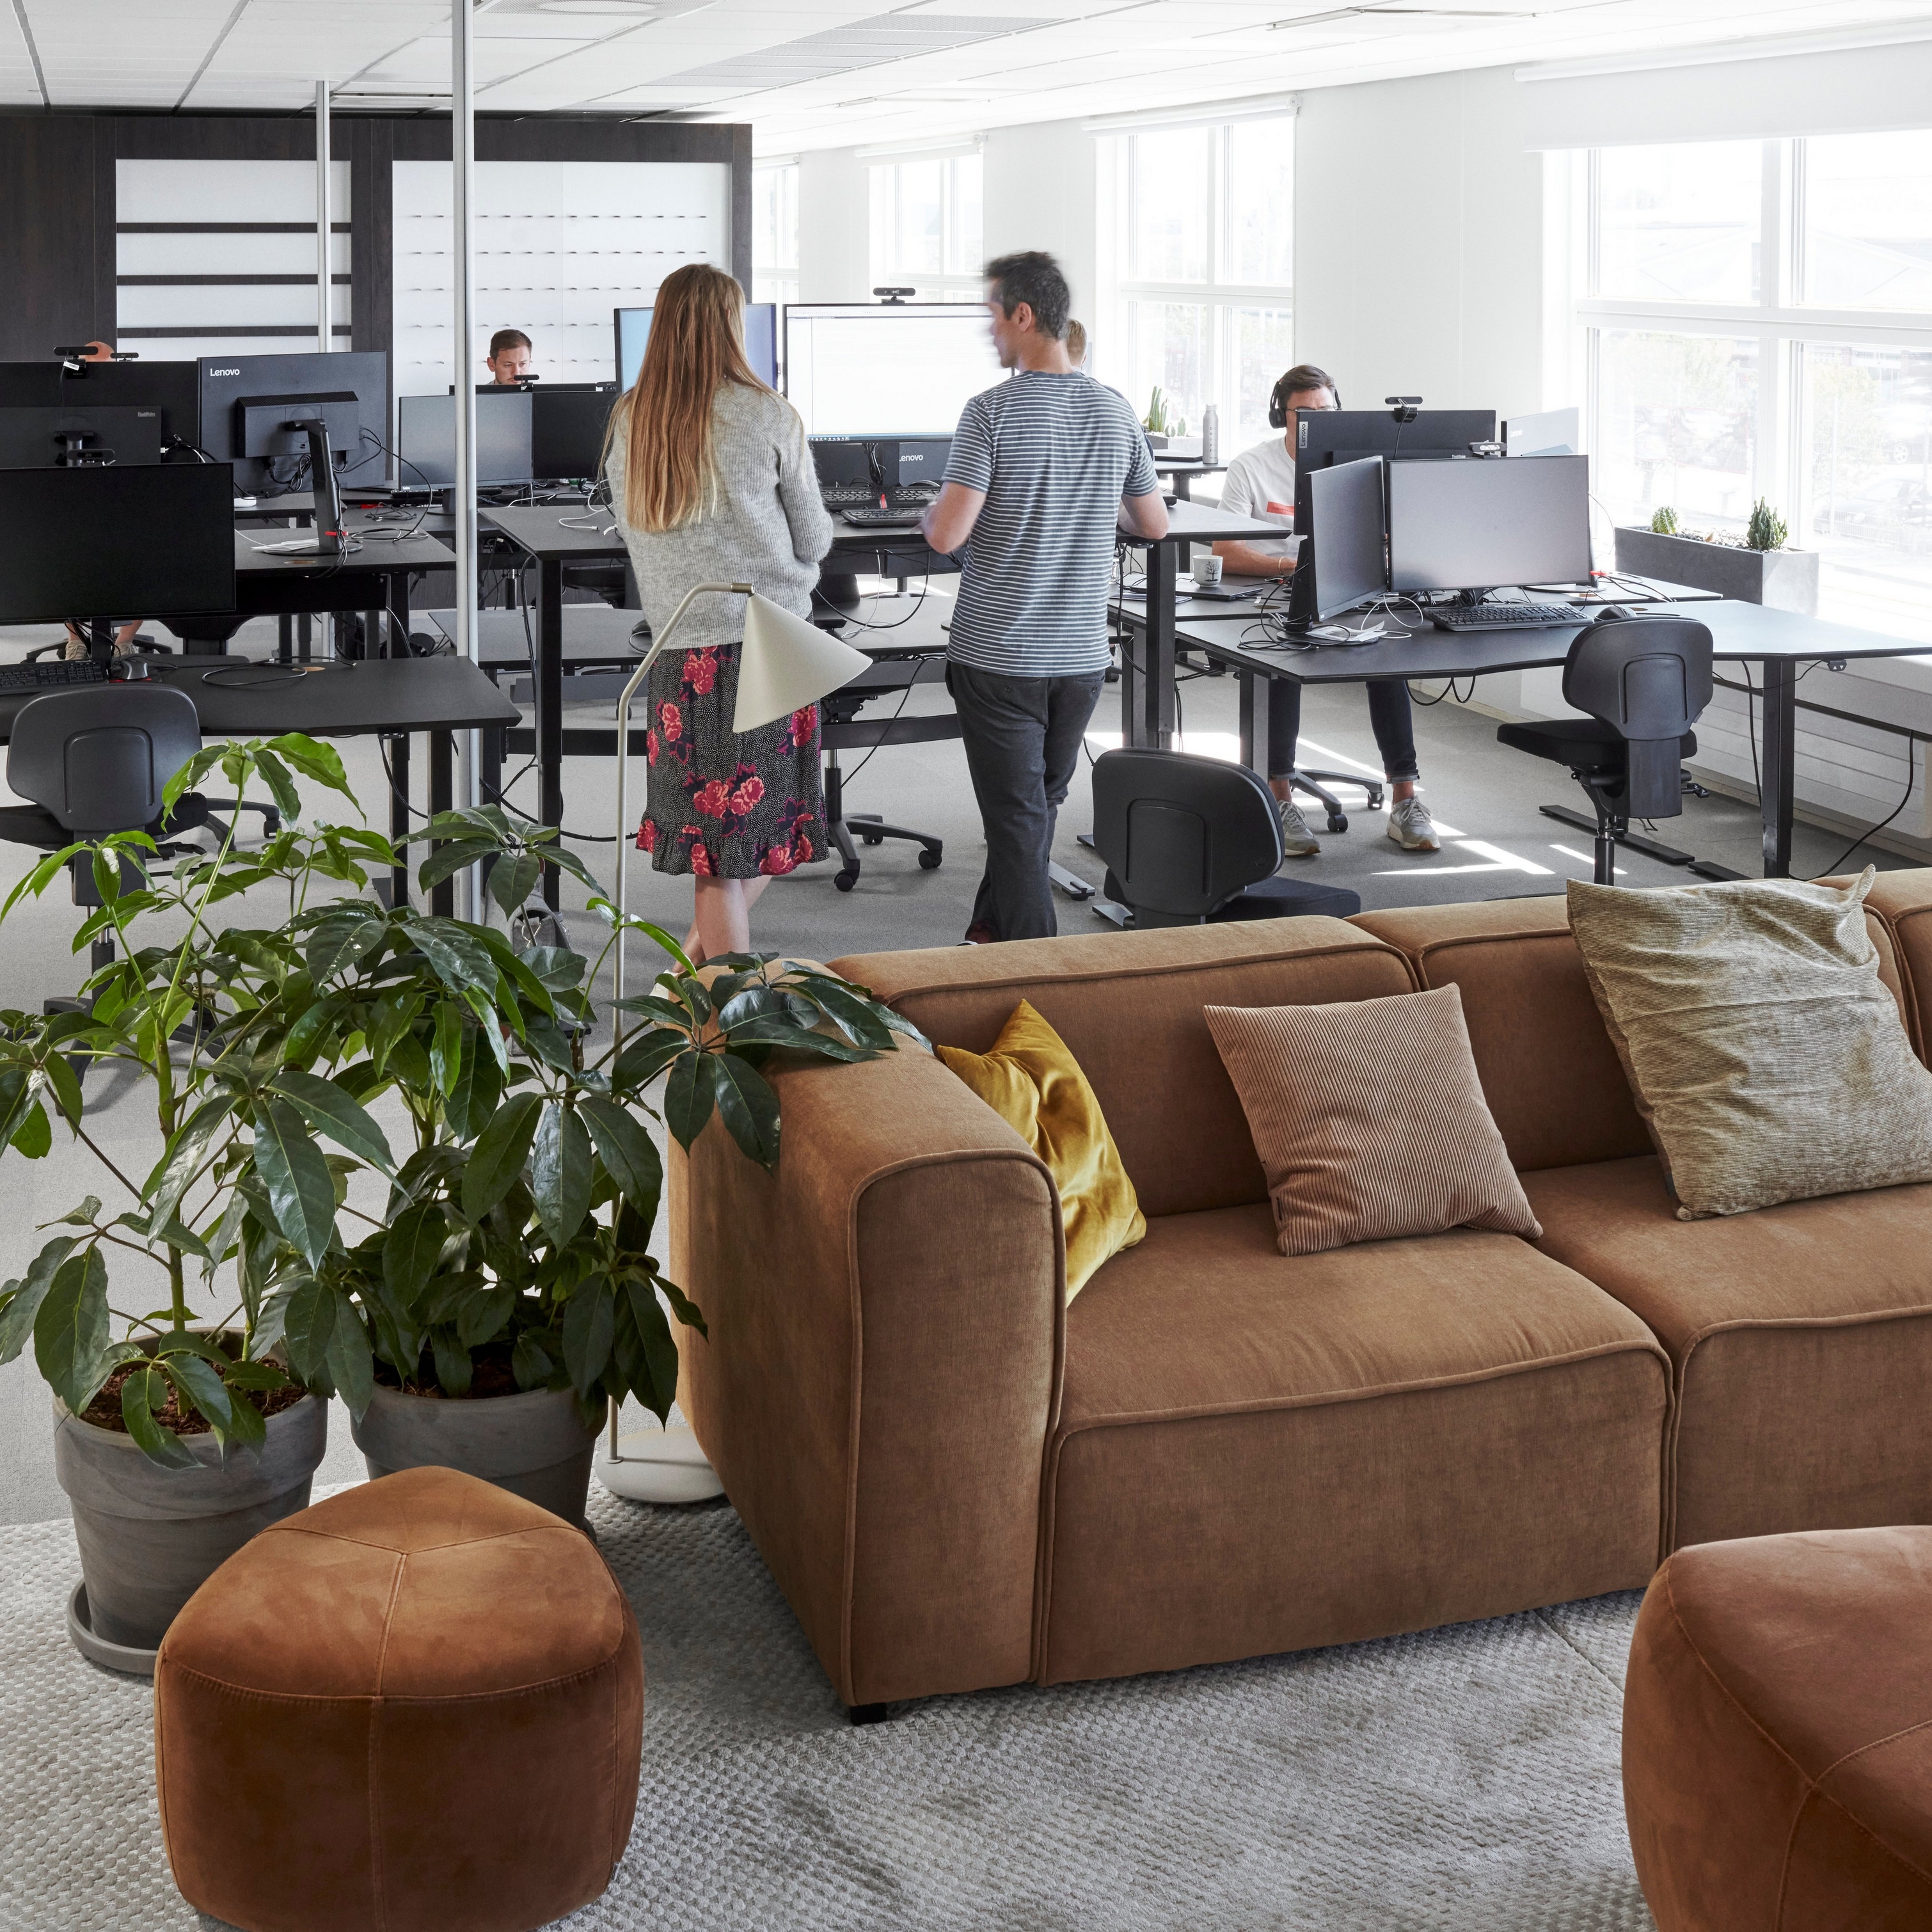 Nowoczesna przestrzeń biurowa w siedzibie głównej BoConcept z pracownikami, komputerami, roślinami i brązową sofą Carmo.